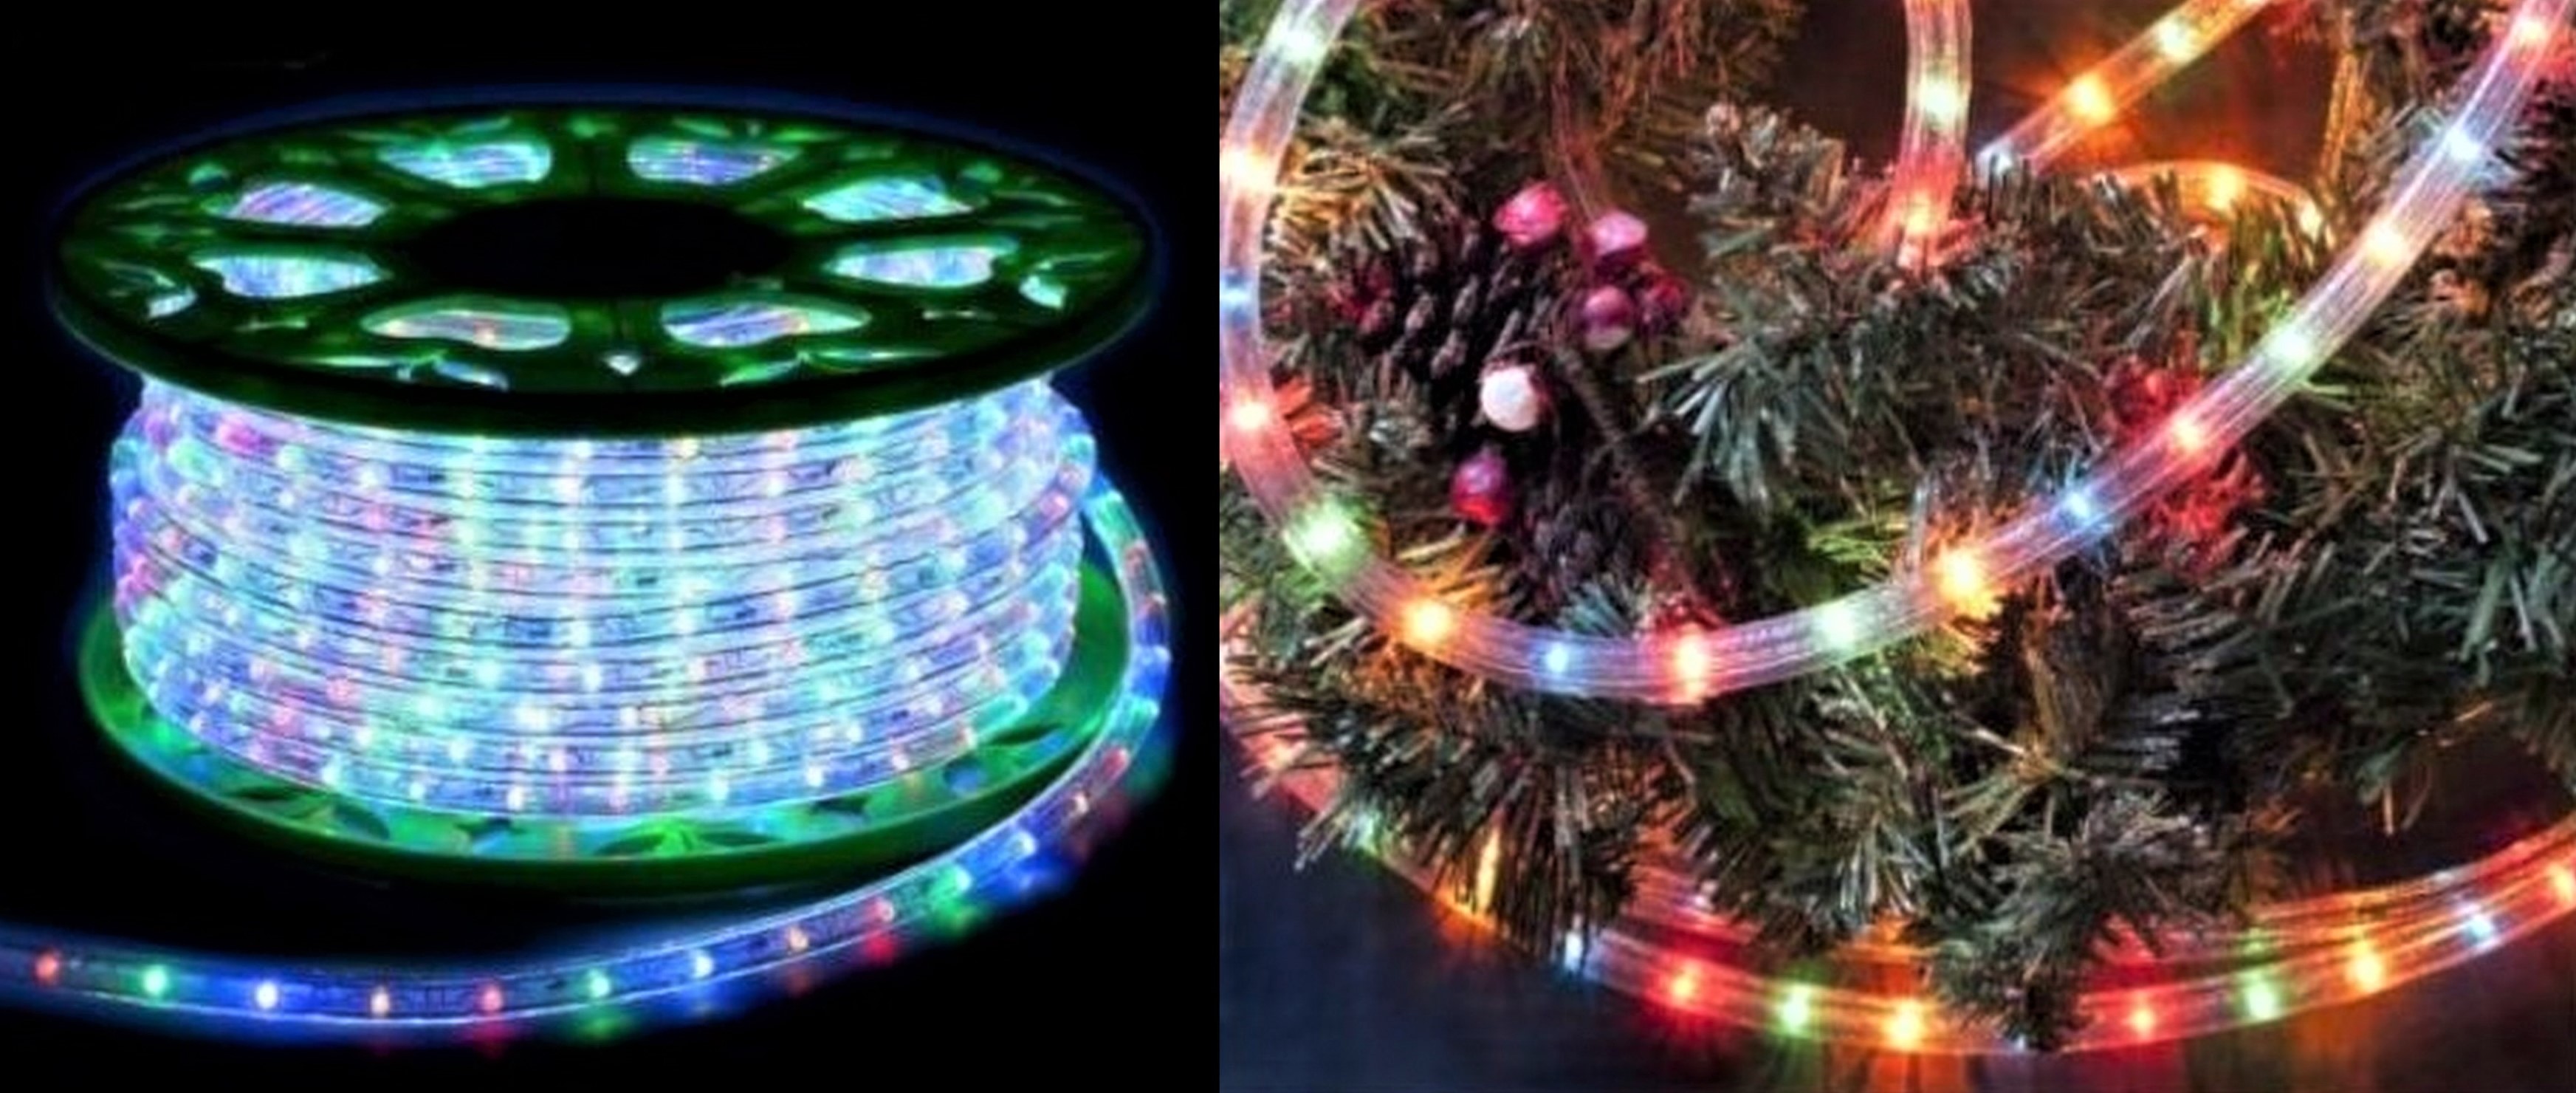 Ruban LED : 4 astuces pour une décoration lumineuse de Noël réussie